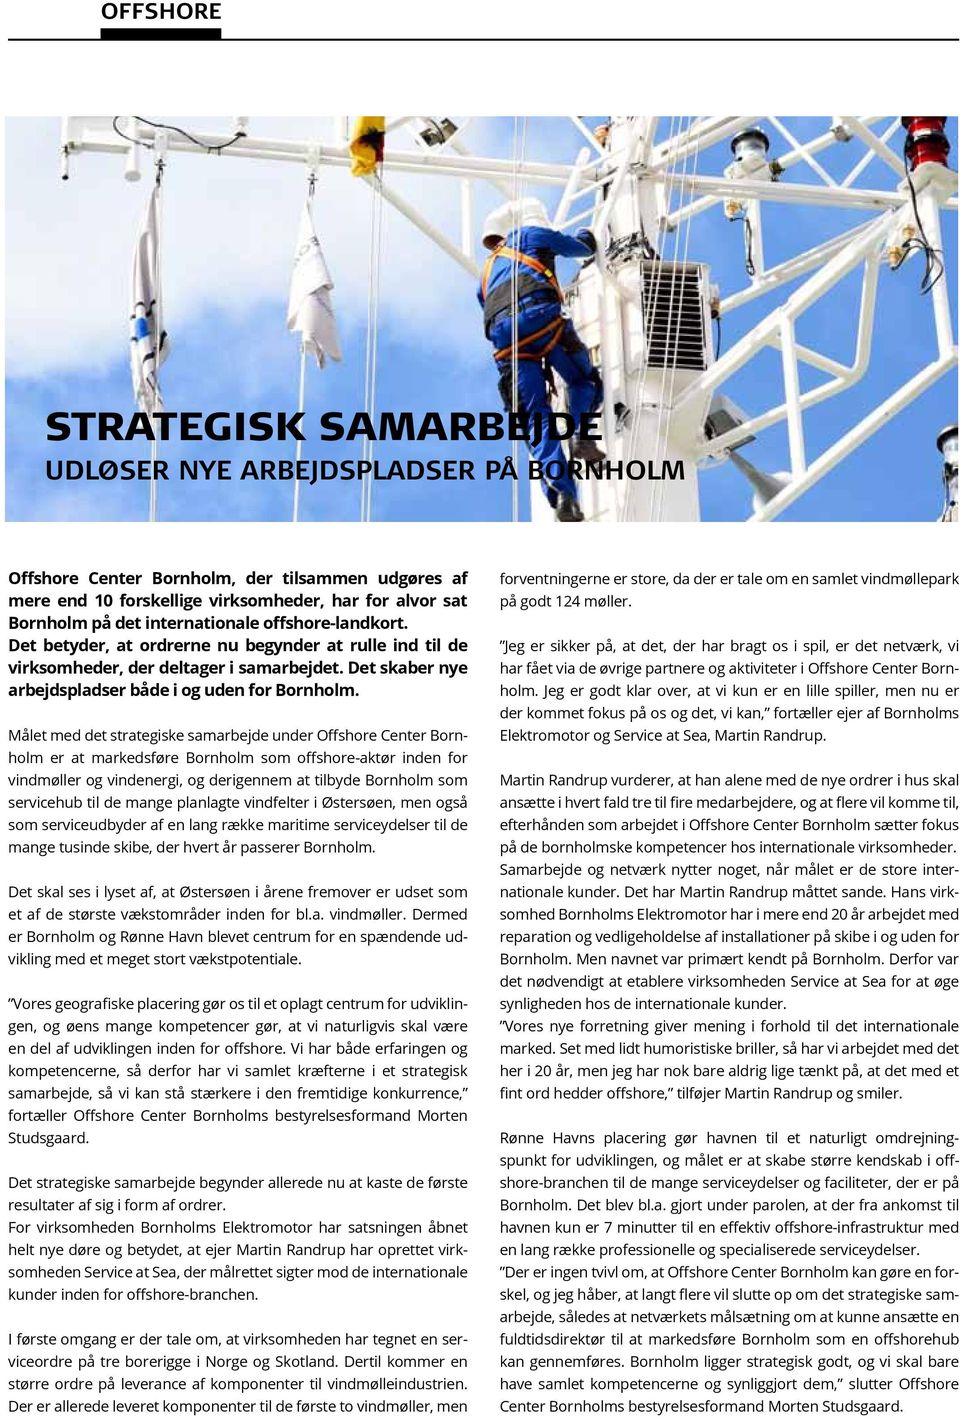 Målet med det strategiske samarbejde under Offshore Center Bornholm er at markedsføre Bornholm som offshore-aktør inden for vindmøller og vindenergi, og derigennem at tilbyde Bornholm som servicehub